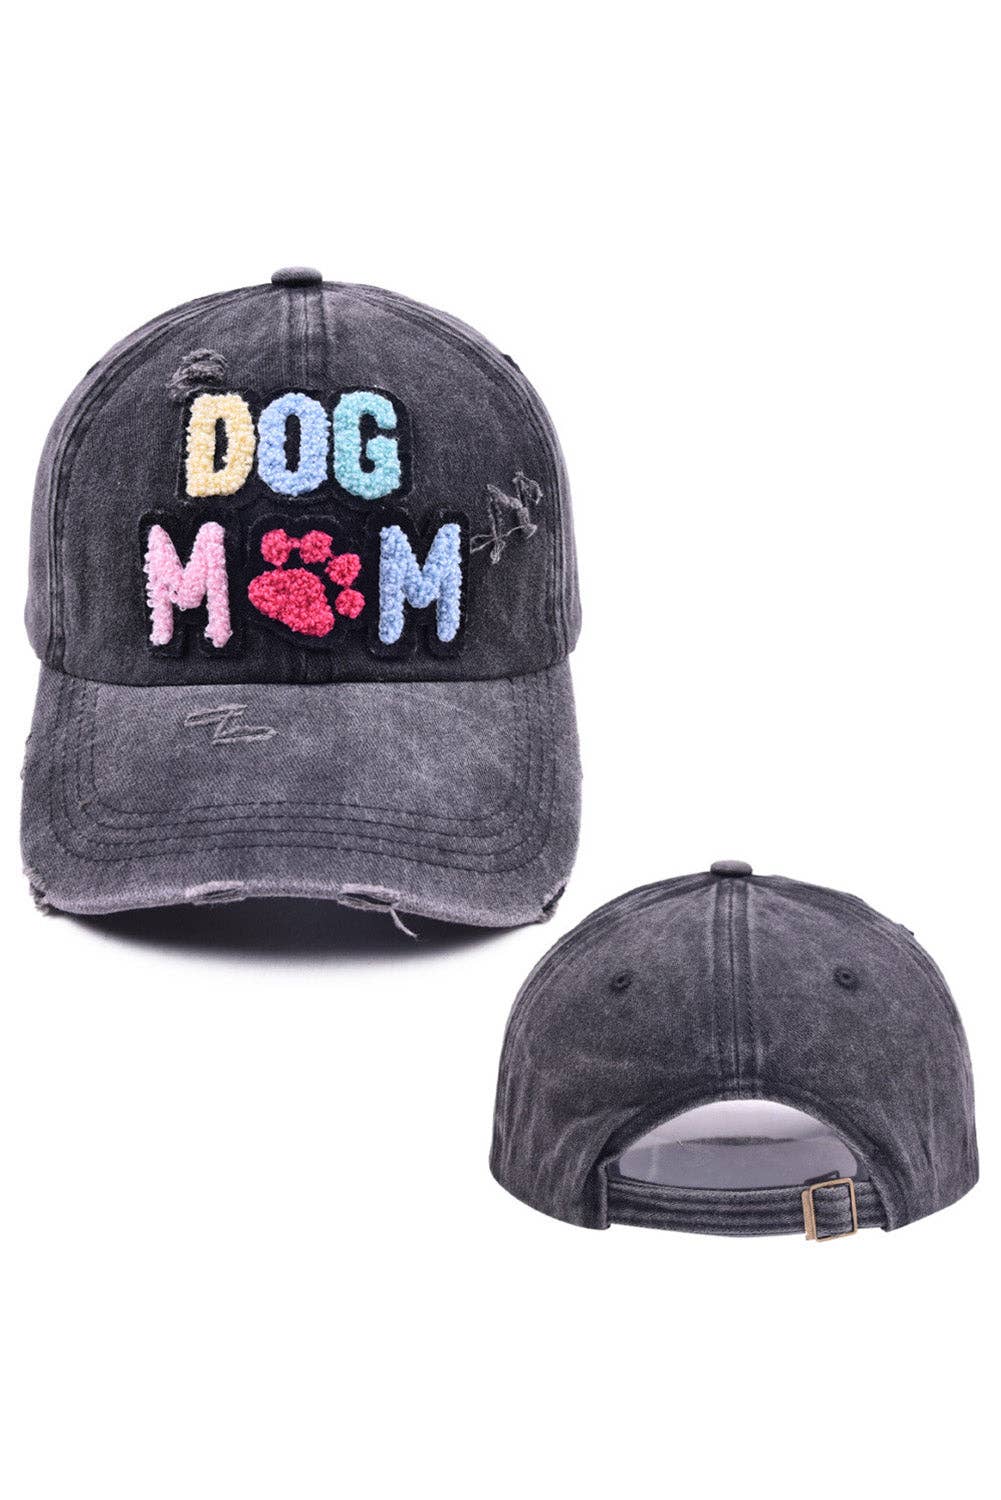 Dog Mama Baseball Cap